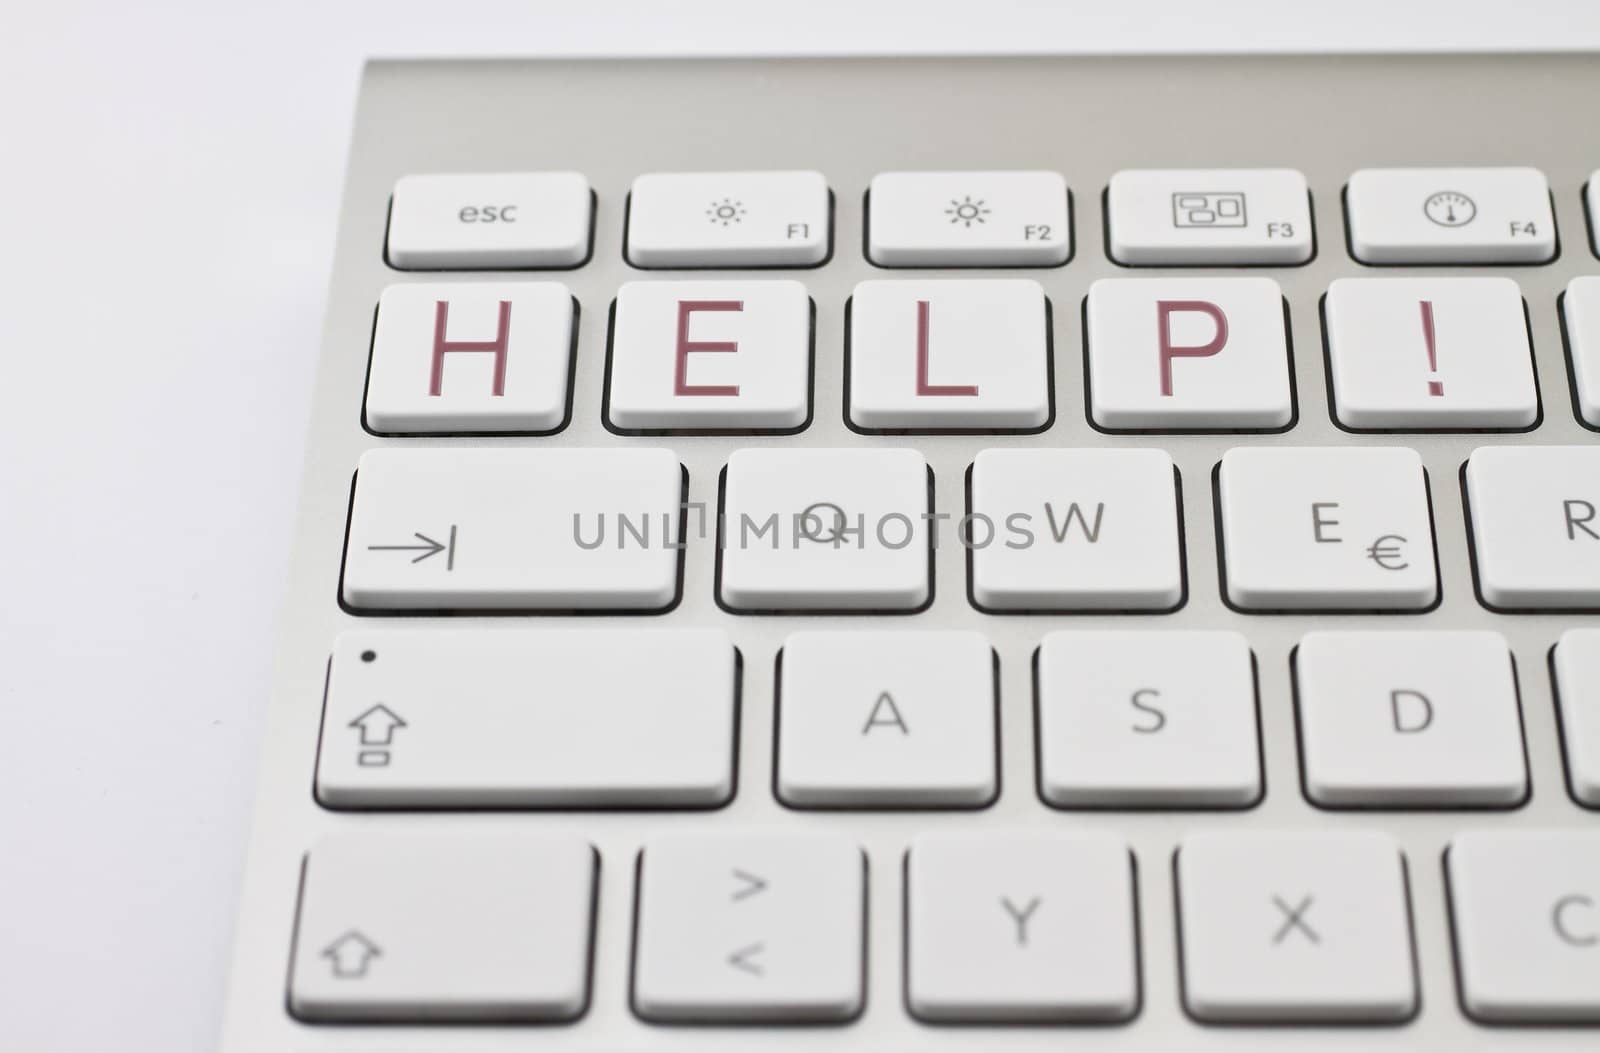 HELP! on keyboard by gewoldi